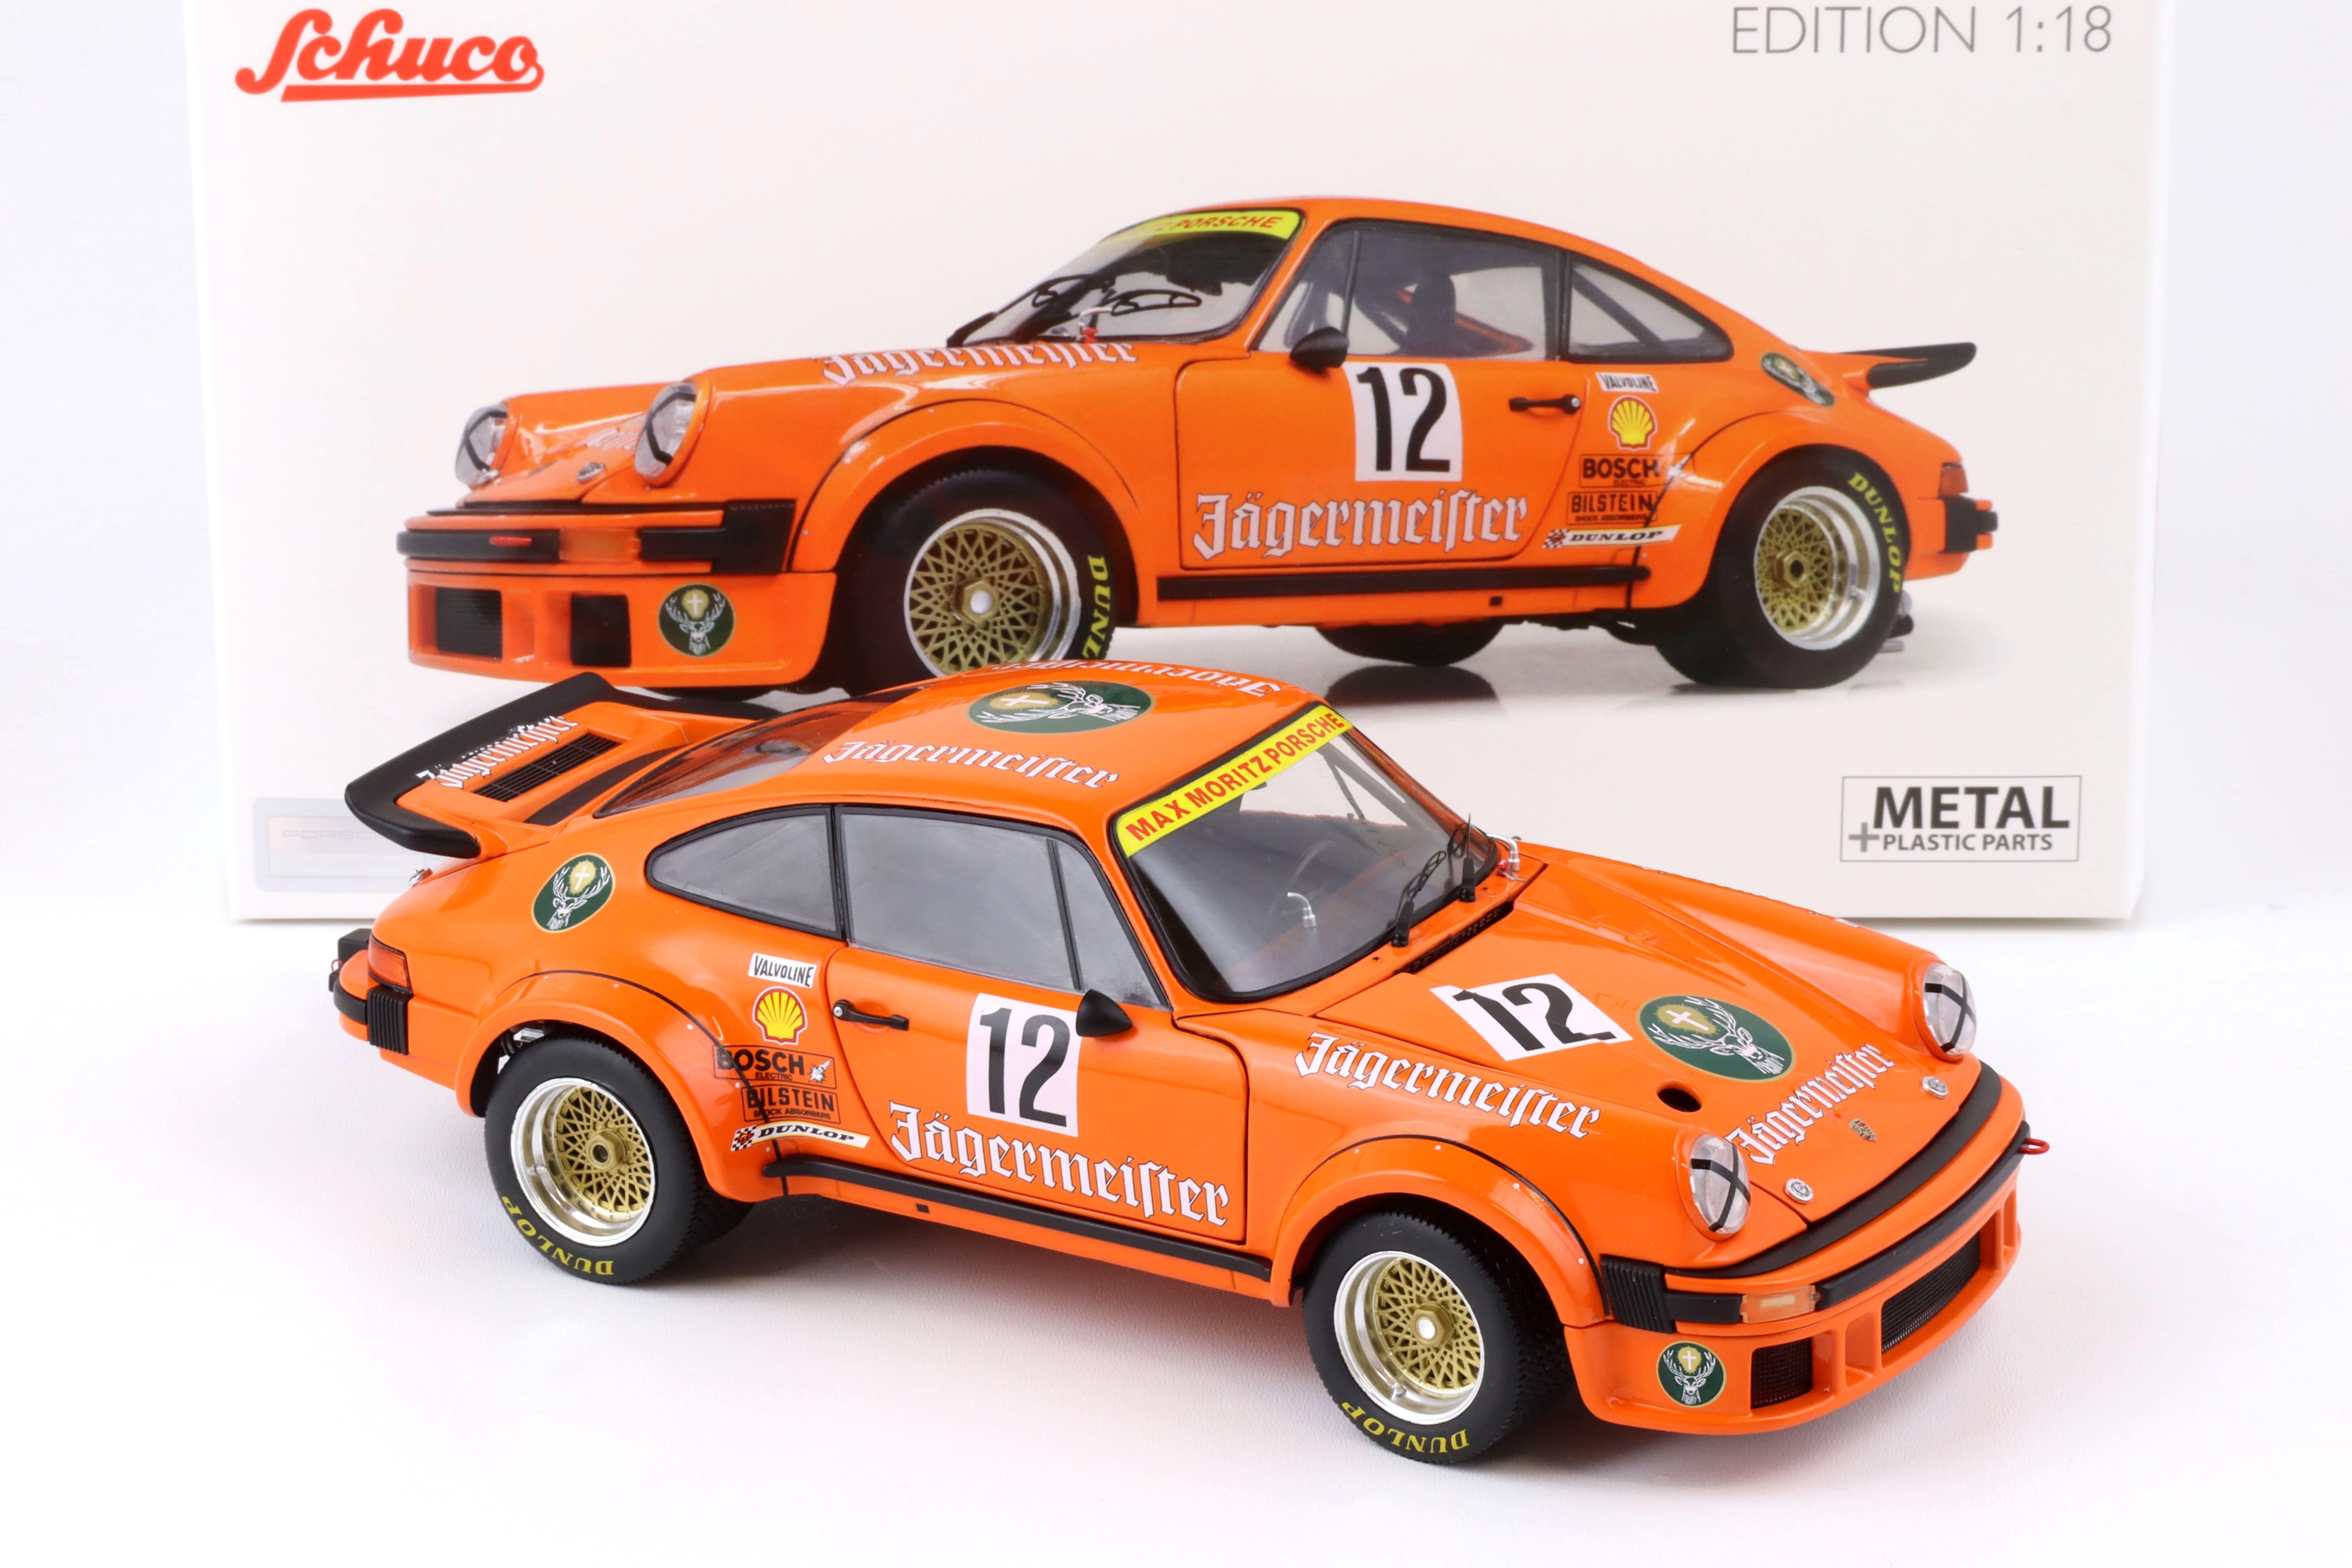 1:18 Schuco Porsche 934 RSR Jägermeister #12 Eifelrennen DRM 1976